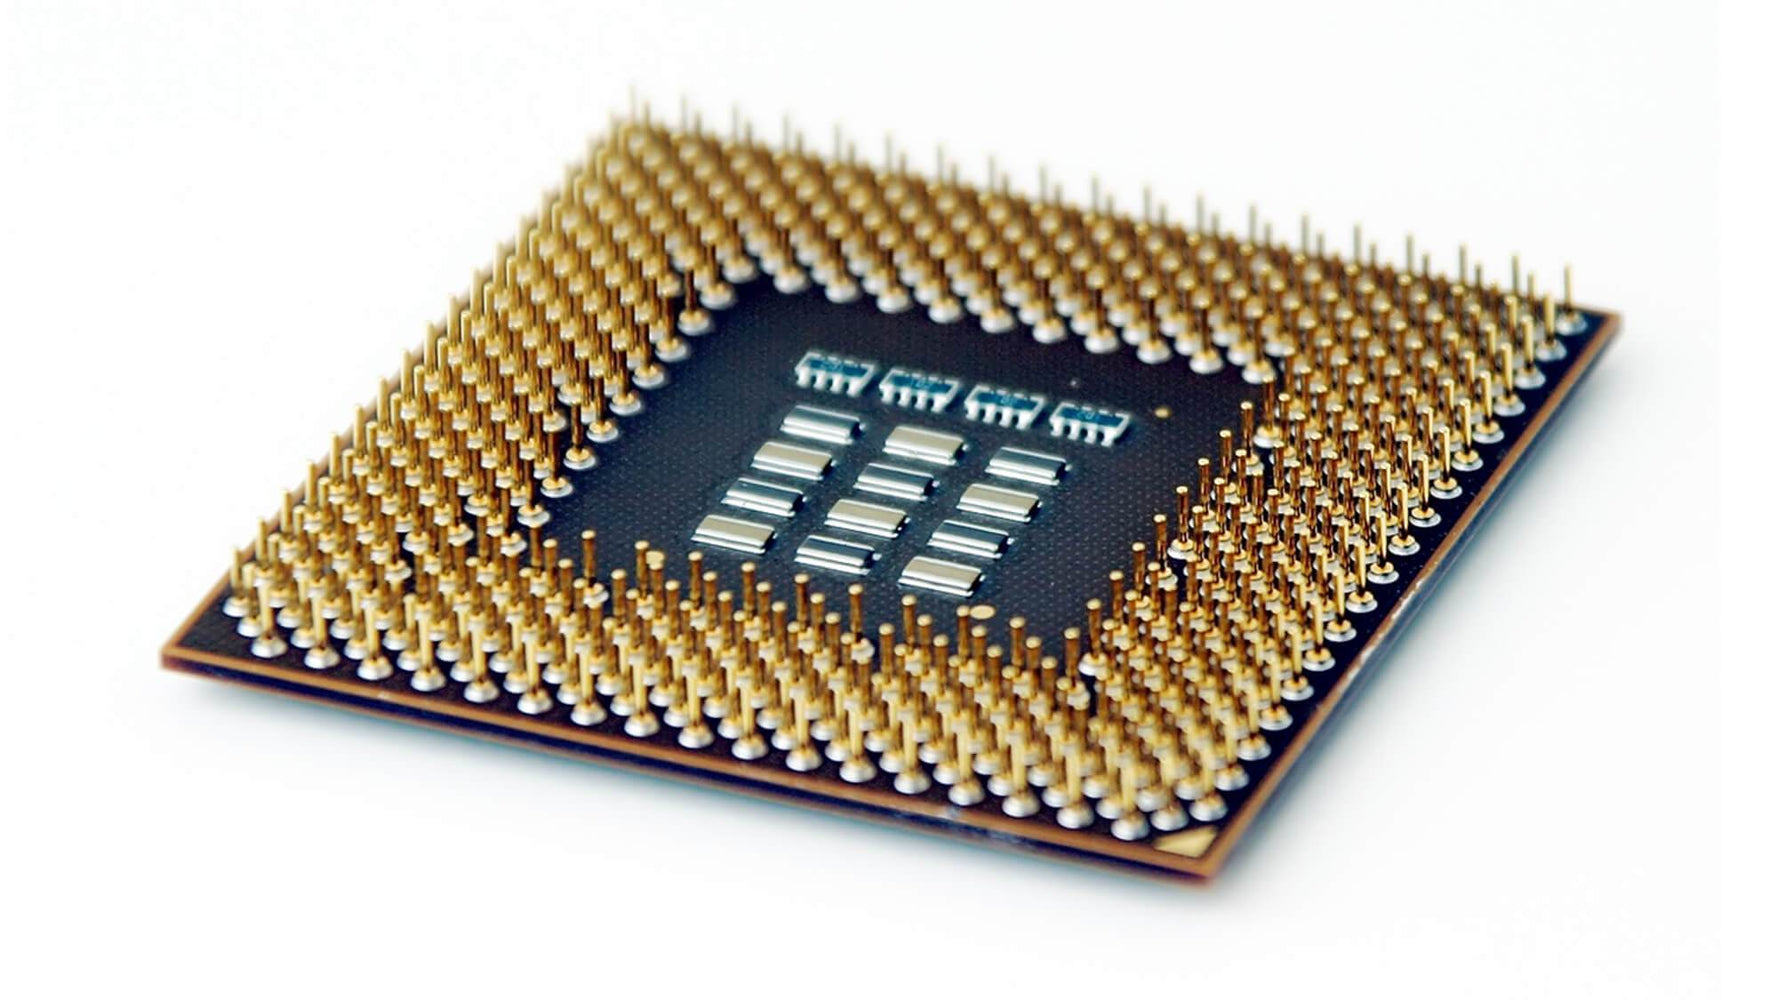 BX80623G860-A1 - Intel Pentium G860 2-Core 3.00GHz 5GT/s DMI 3MB SmartCache Socket LGA1155 Processor